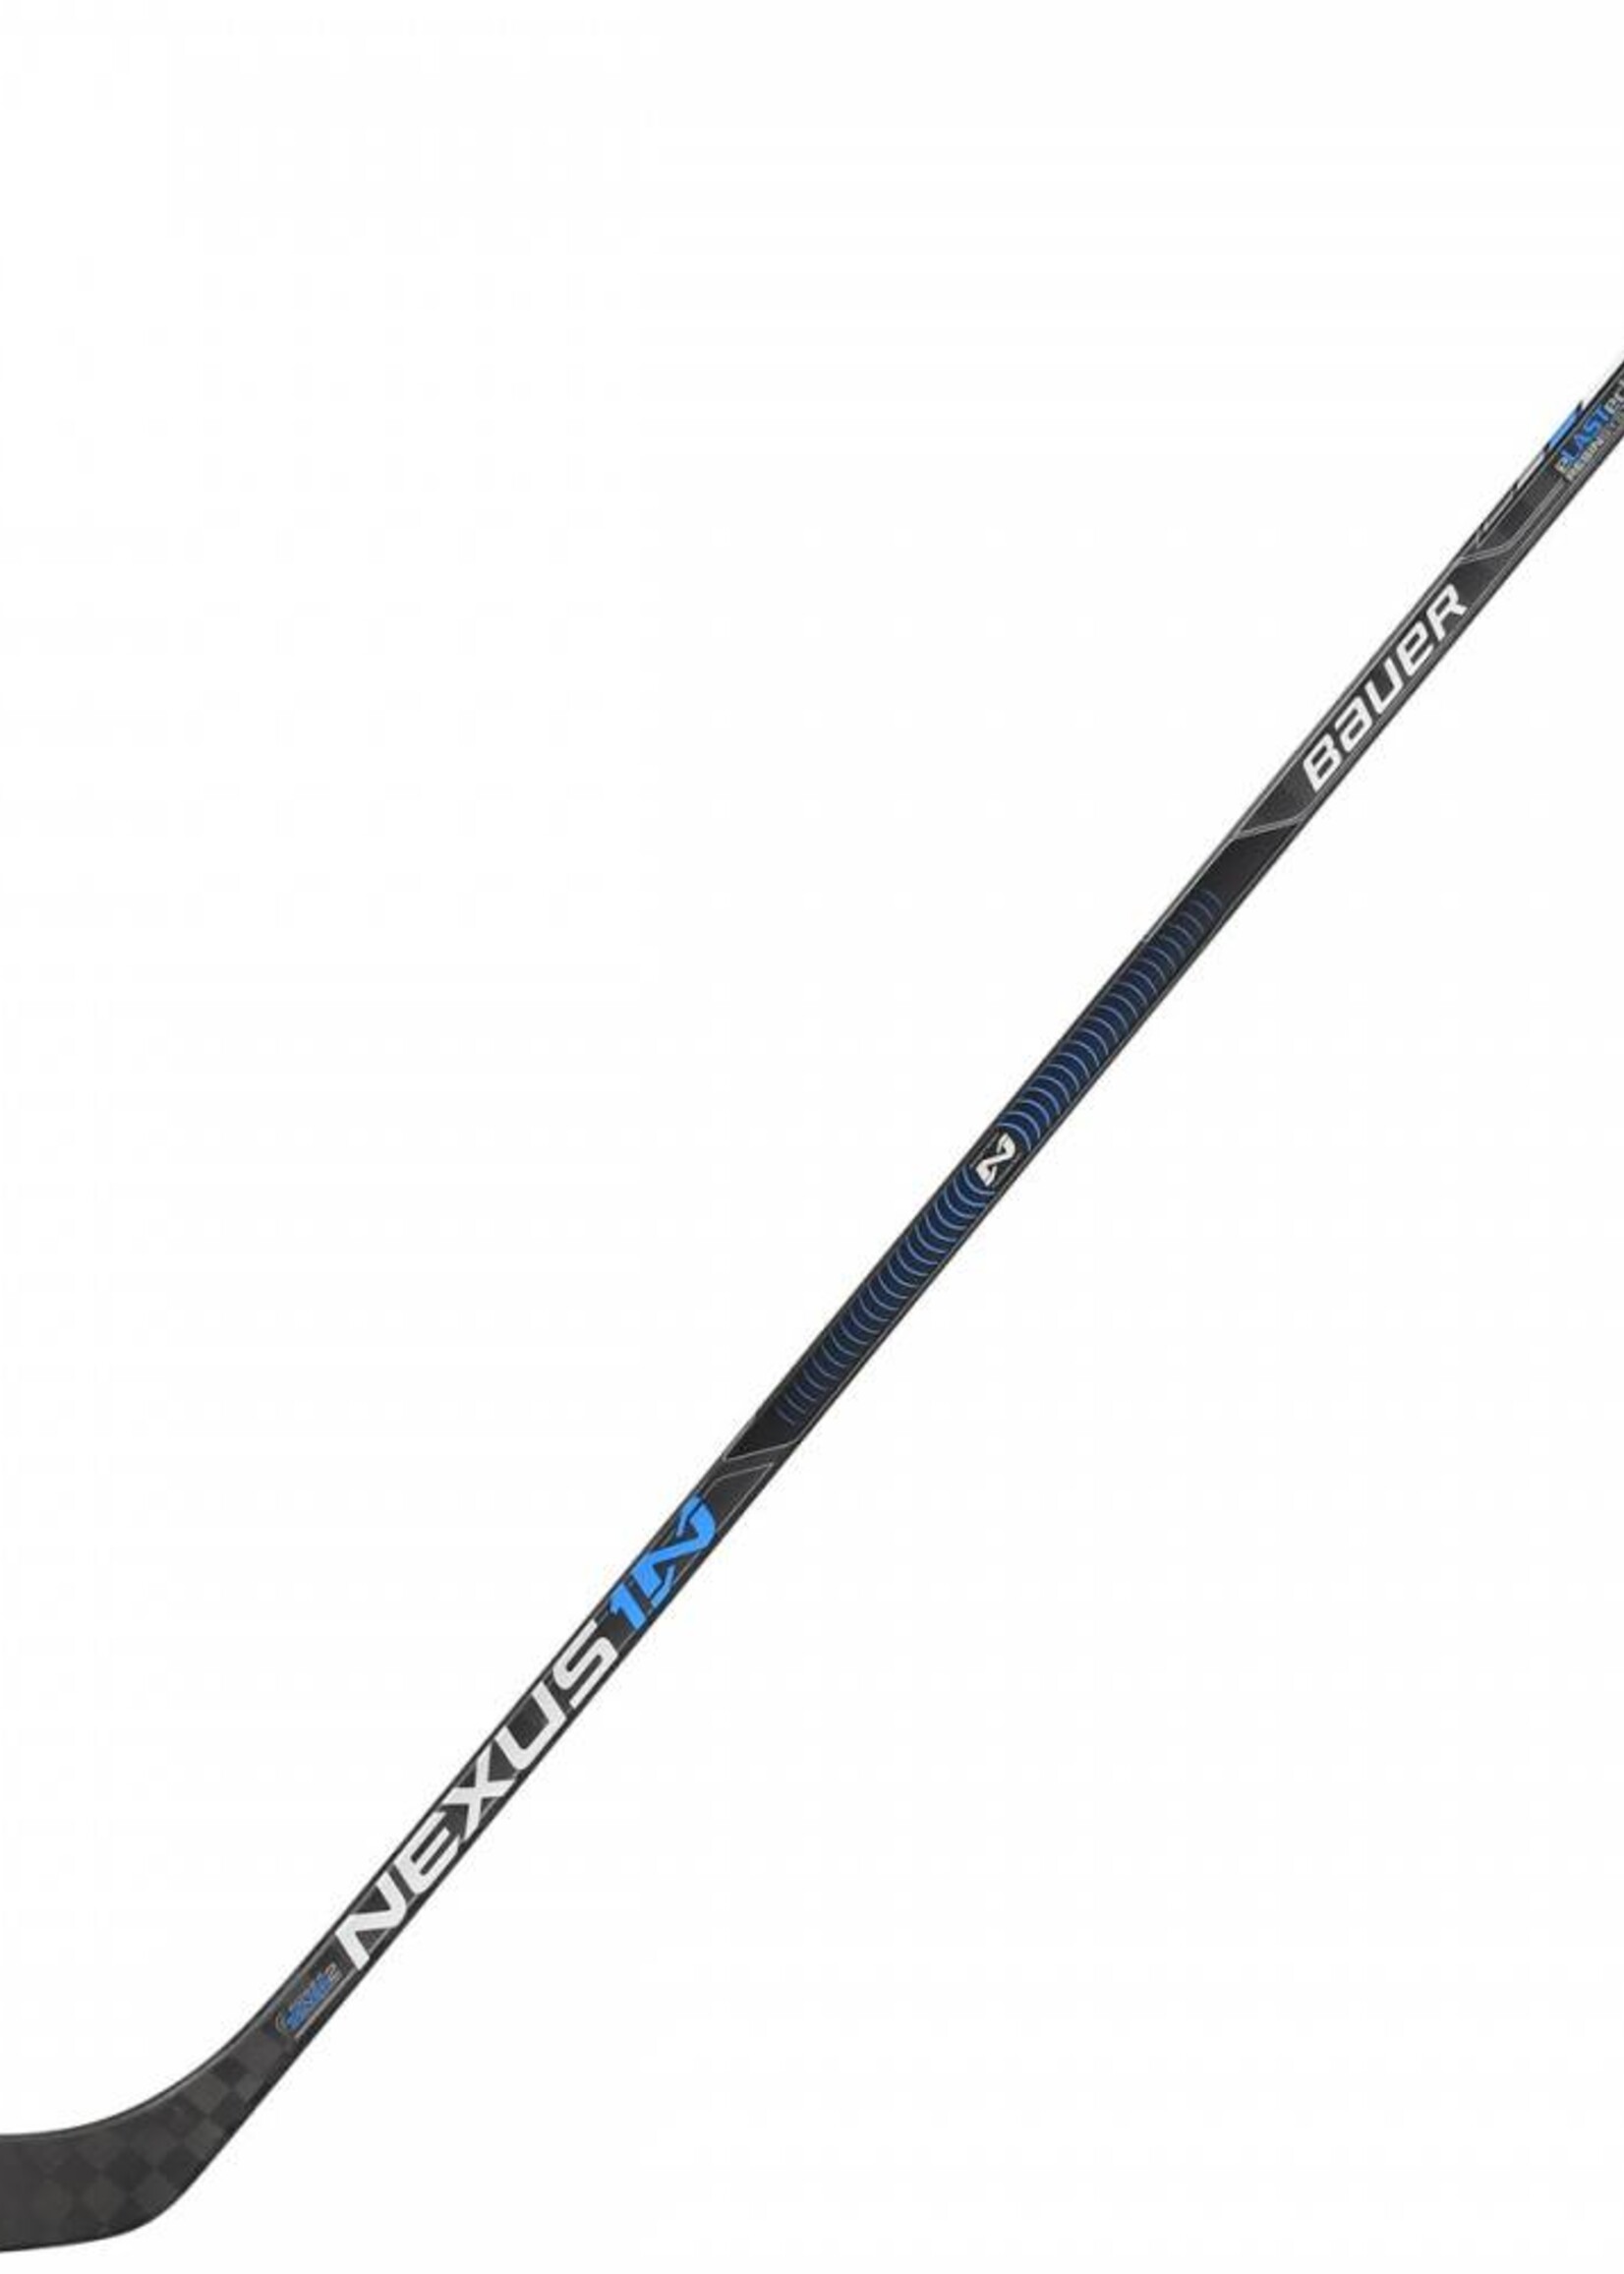 BAU Bauer Nexus 1N Senior Grip Stick '16